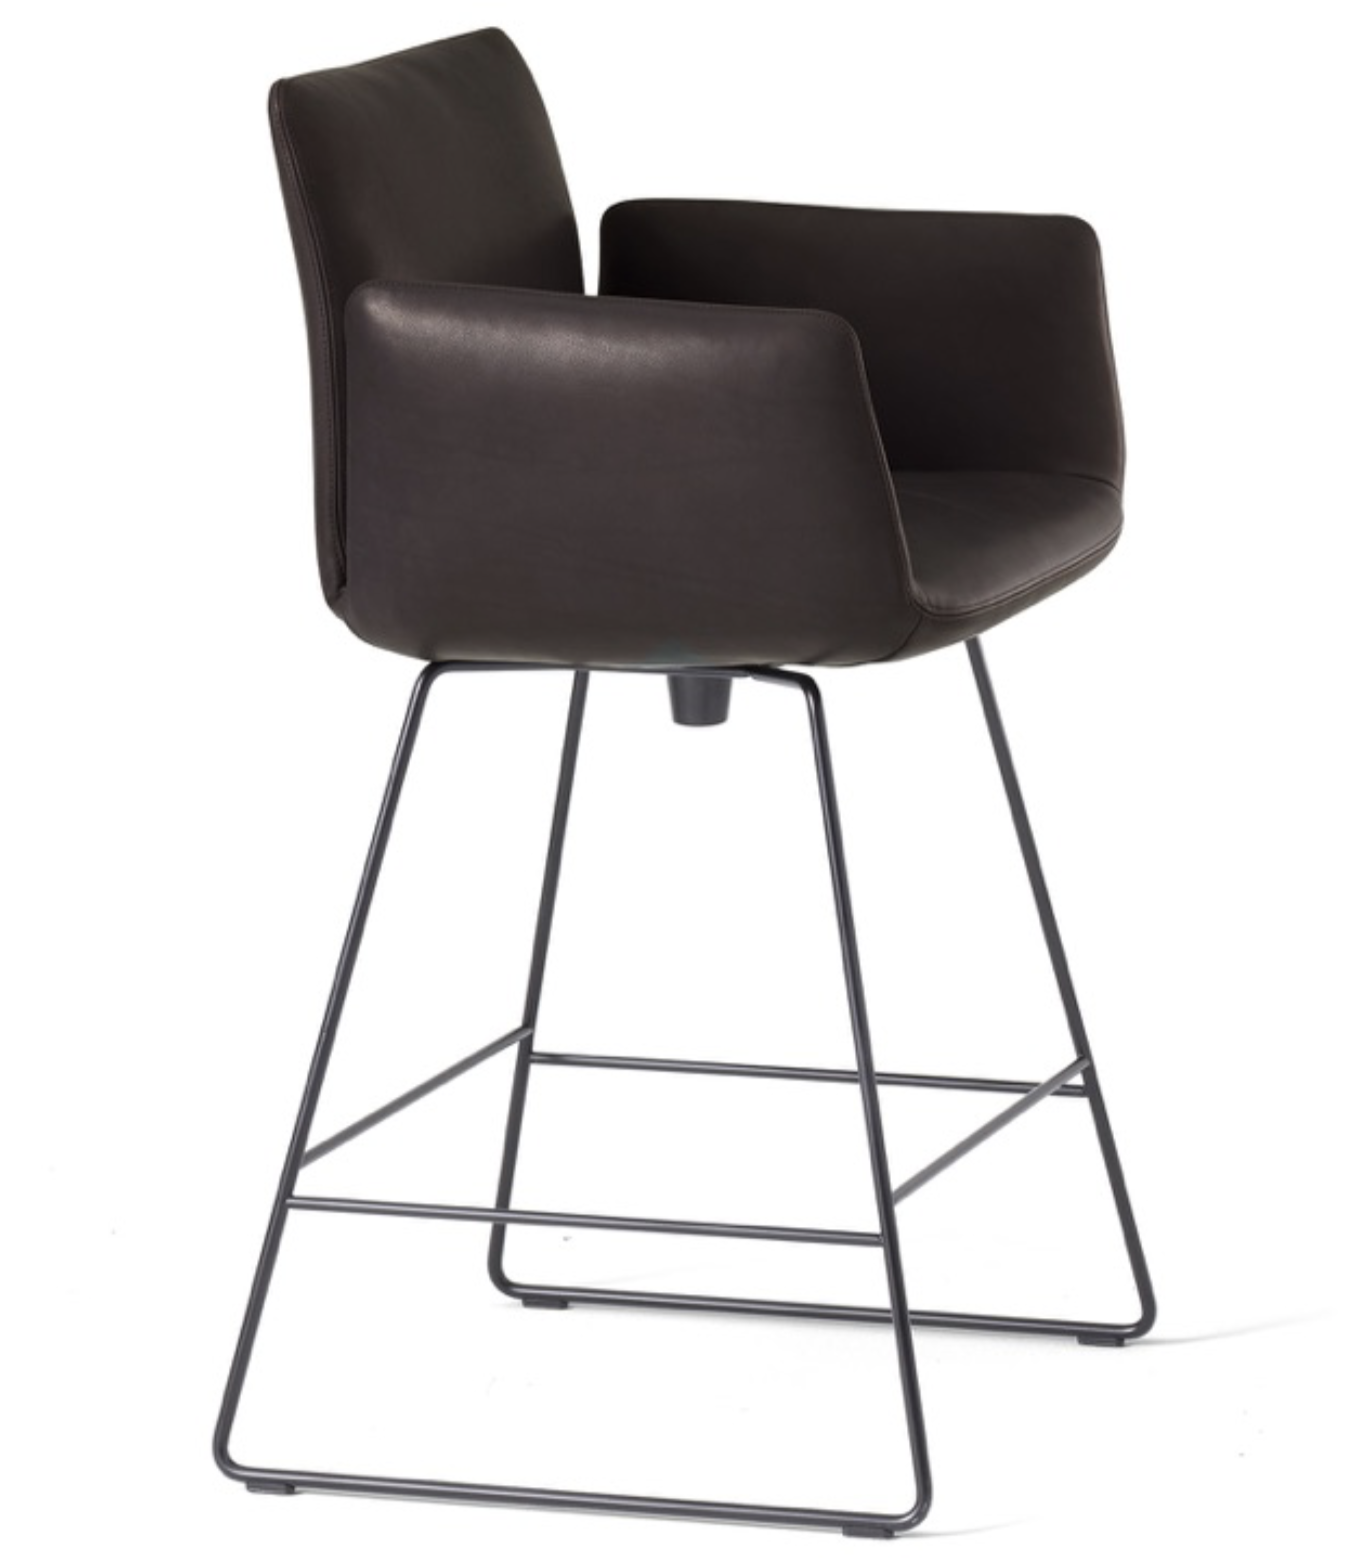 Product Image jalis stool sled with swivel